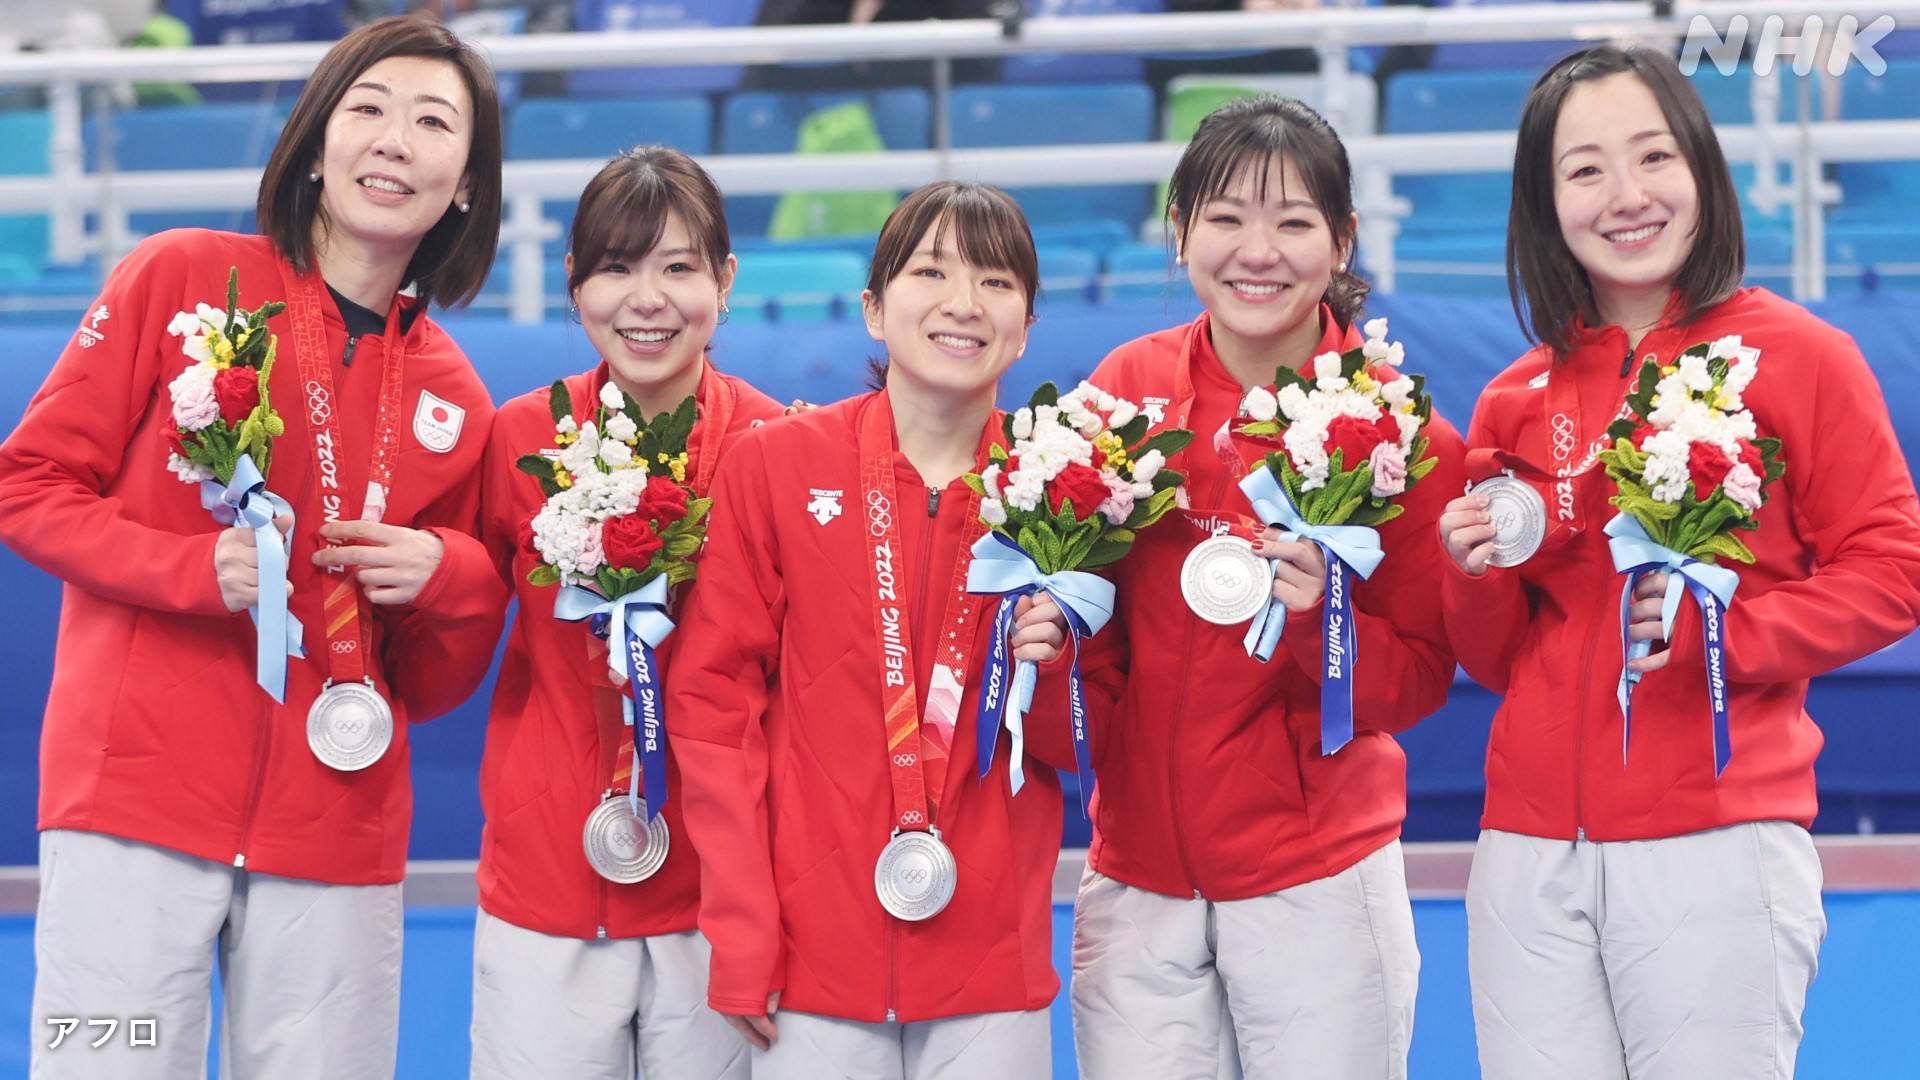 カーリング女子 日本代表が銀メダル 決勝や表彰式の模様を動画でまとめています Twitter